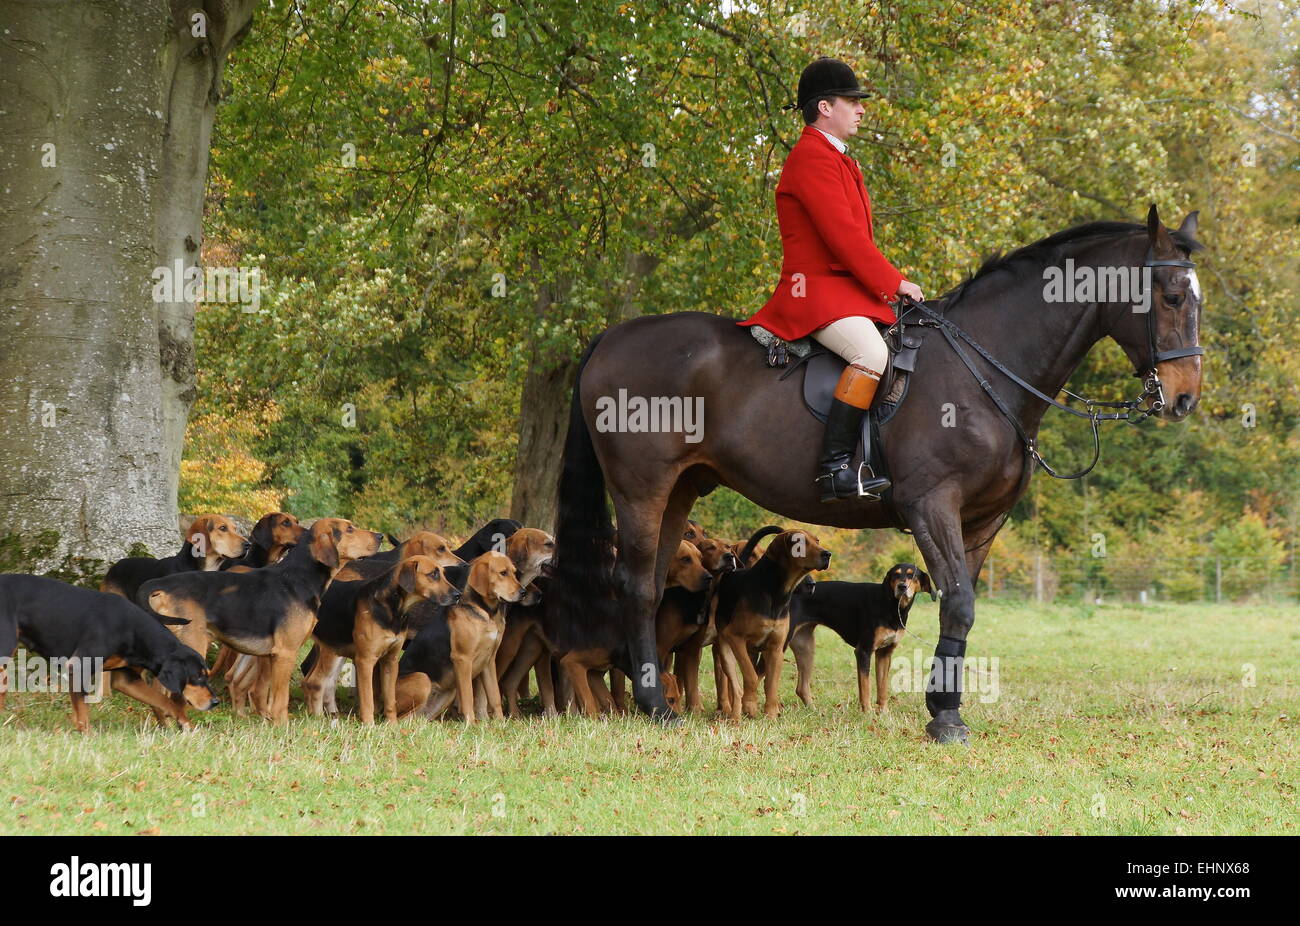 Huntsman y su hounds esperando el apagado. Fotografía tomada en Rockley Manor, Wiltshire Foto de stock